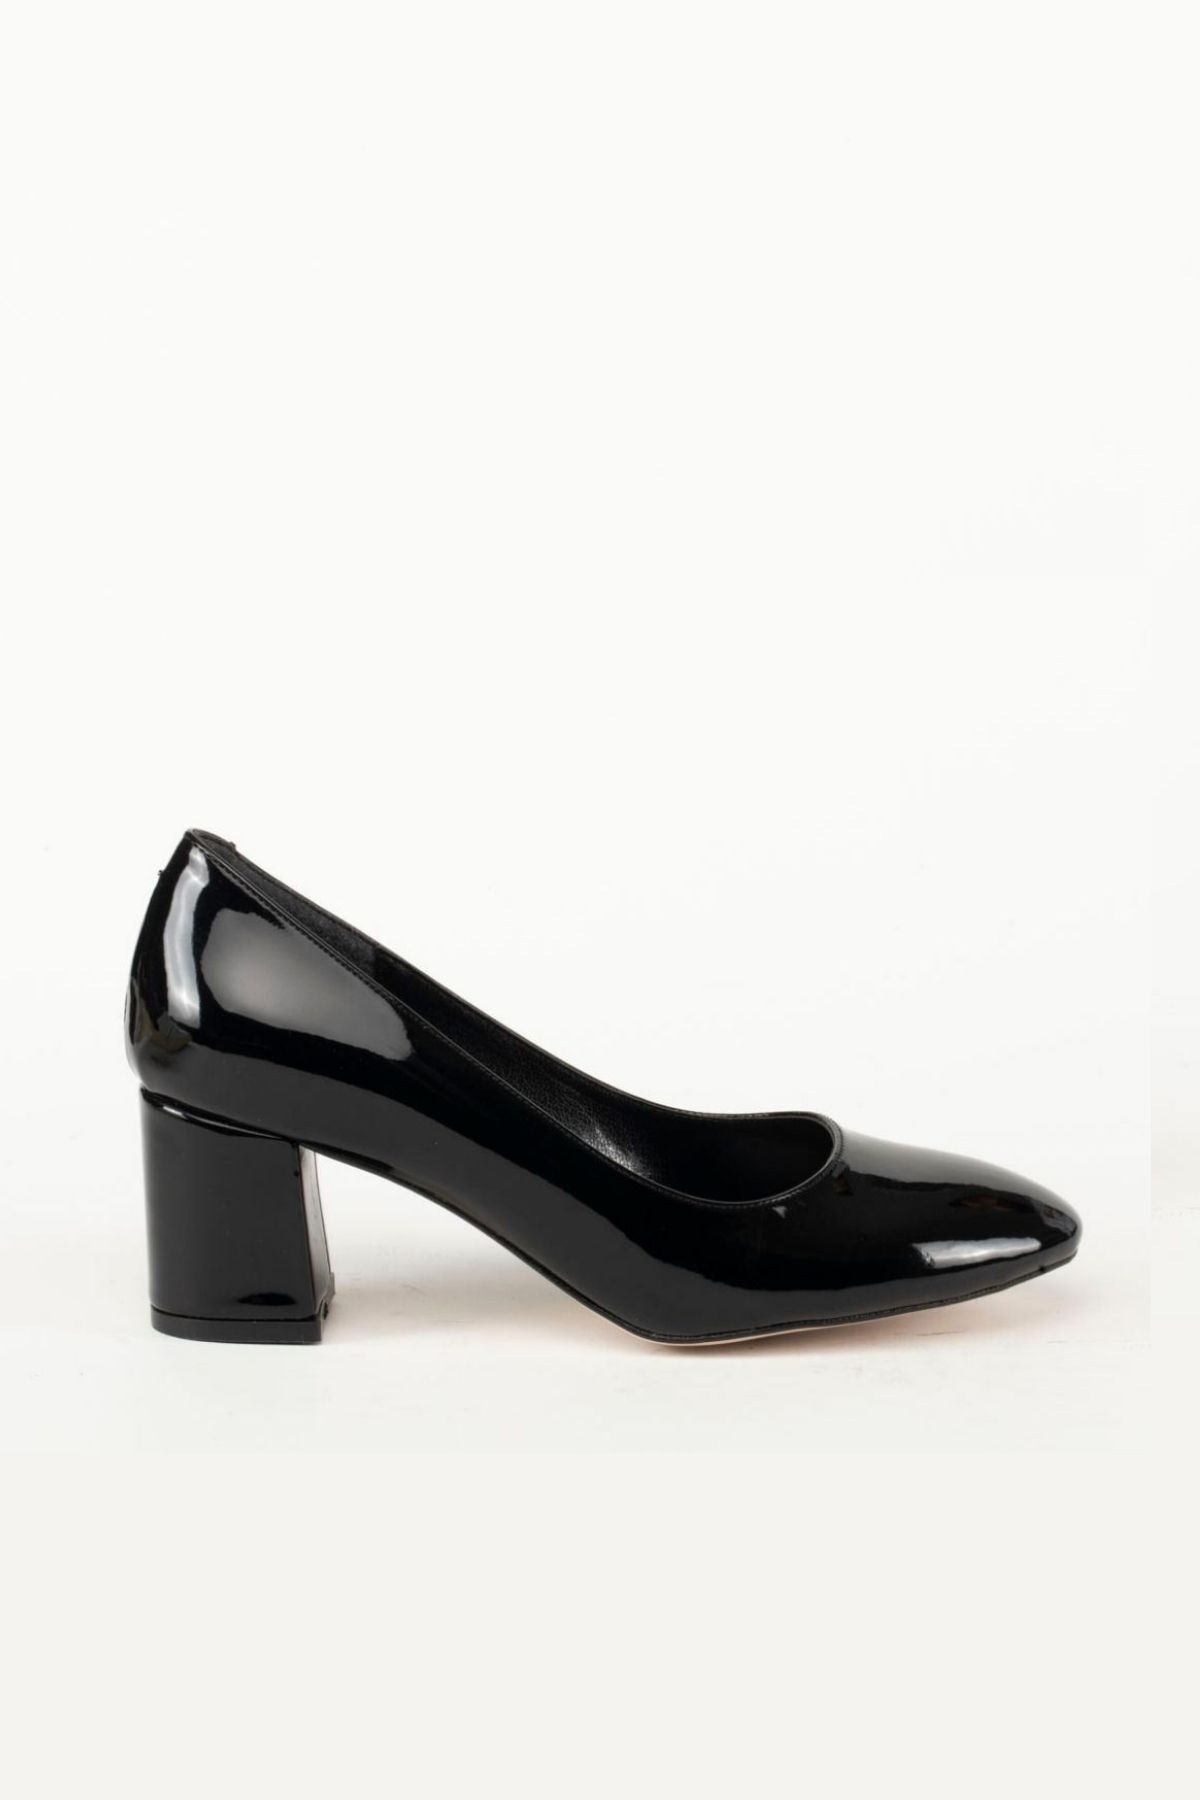 Kadın Ayakkabı Maria Gate Shoes -Siyah